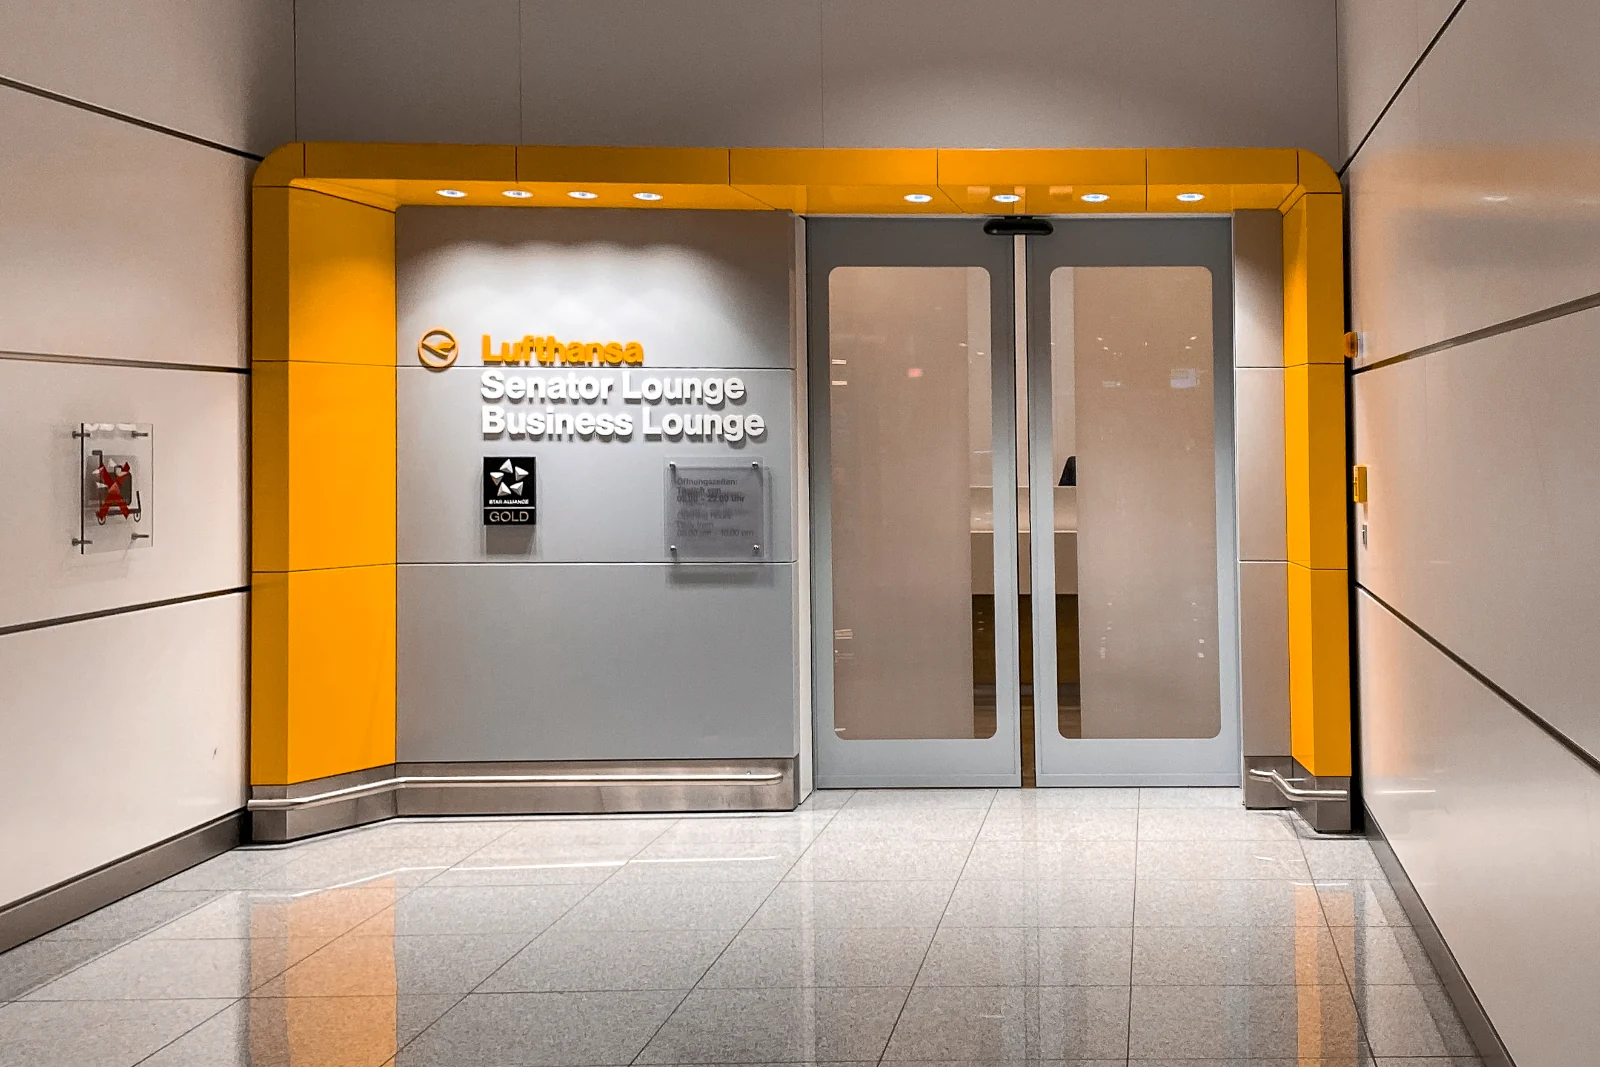 Eingang zu Lufthansa Business und Senator Lounge K im Satellitenterminal des Terminal 2 am Flughafen München